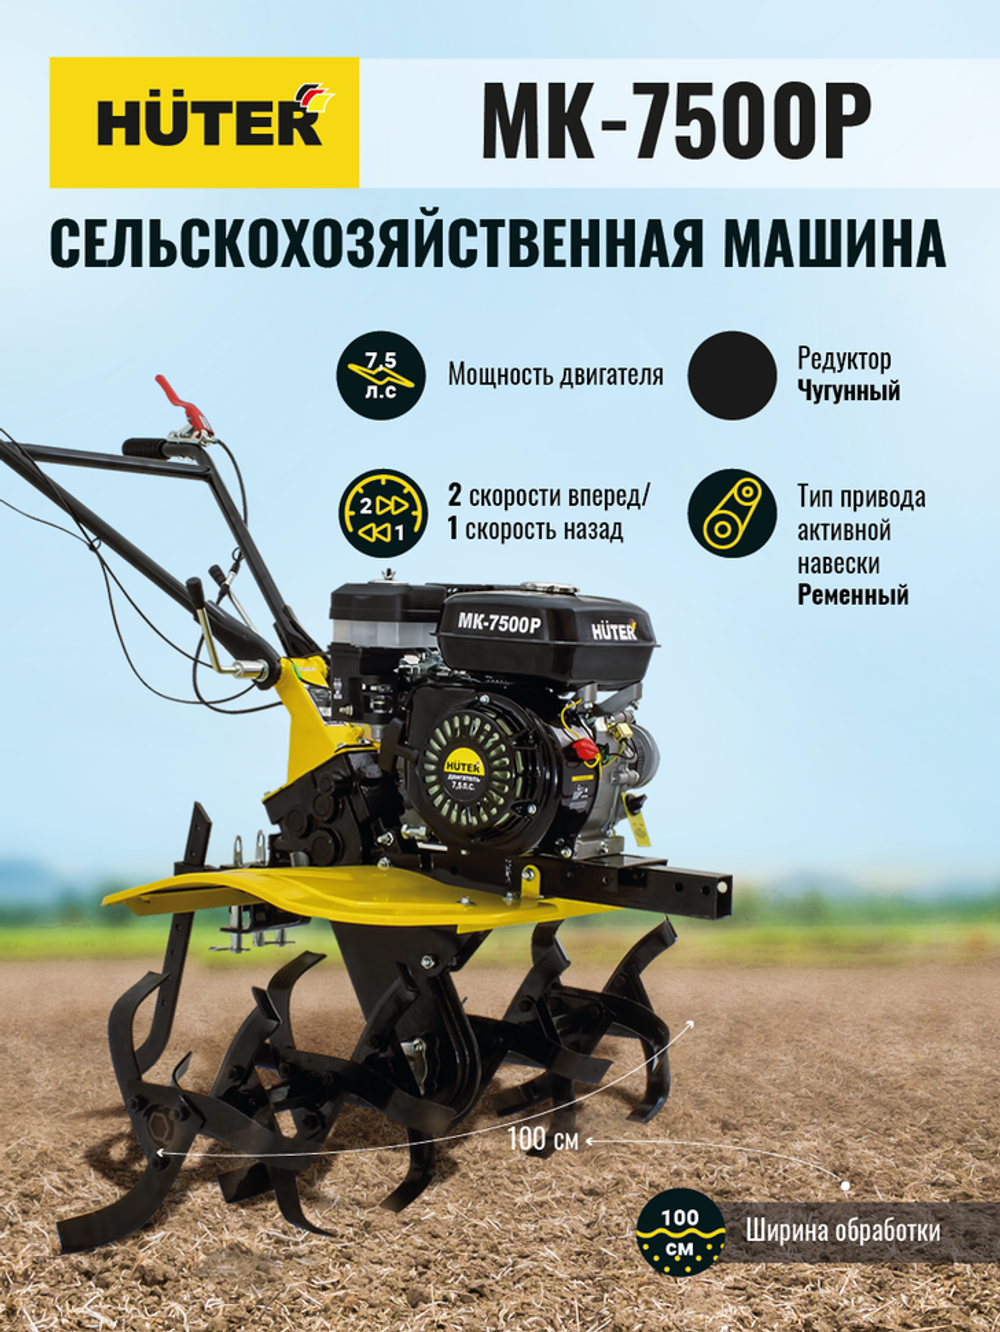 Сельскохозяйственная машина Huter МК-7500P